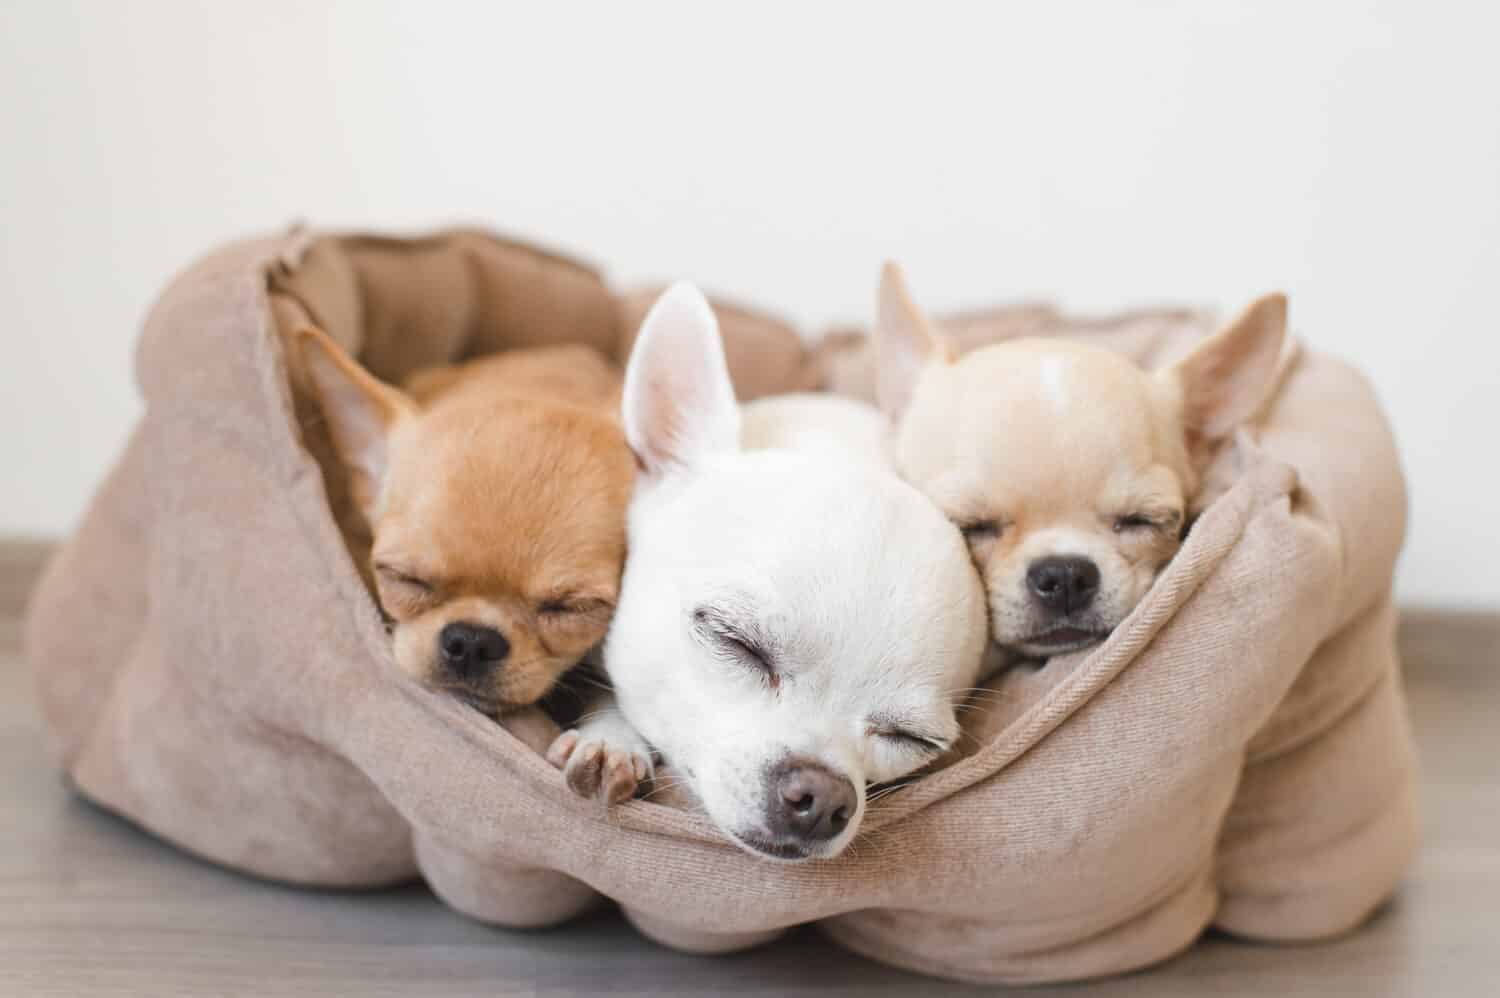 Primo piano di tre adorabili cuccioli di chihuahua di razza domestica di mammiferi amici sdraiati, rilassanti nel letto del cane.  Animali domestici che riposano, dormono insieme.  Ritratto patetico ed emotivo.  Orecchie, occhi e facce da cane